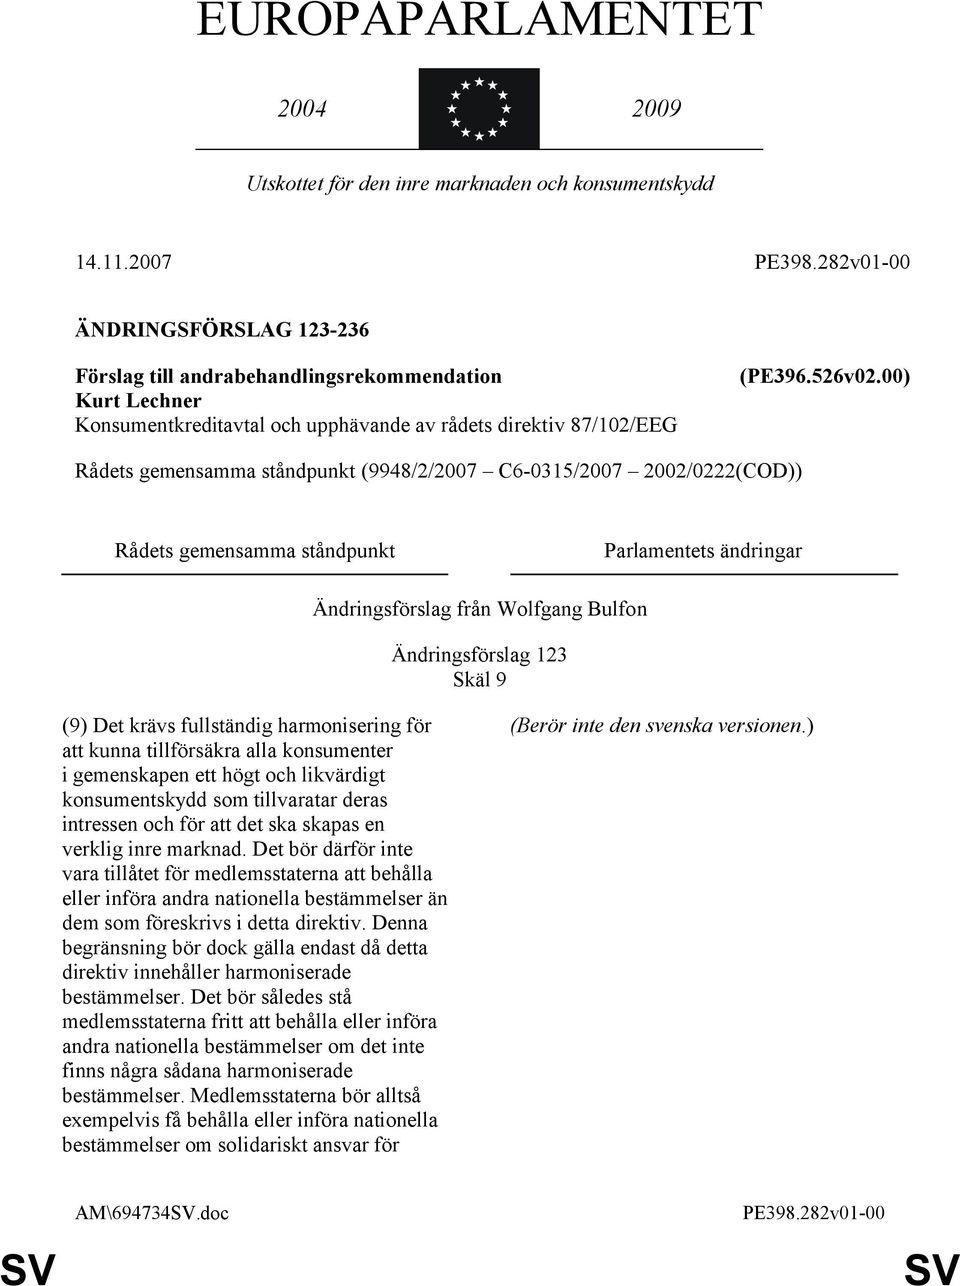 00) Rådets gemensamma ståndpunkt (9948/2/2007 C6-0315/2007 2002/0222(COD)) Rådets gemensamma ståndpunkt Parlamentets ändringar Ändringsförslag från Wolfgang Bulfon Ändringsförslag 123 Skäl 9 (9) Det